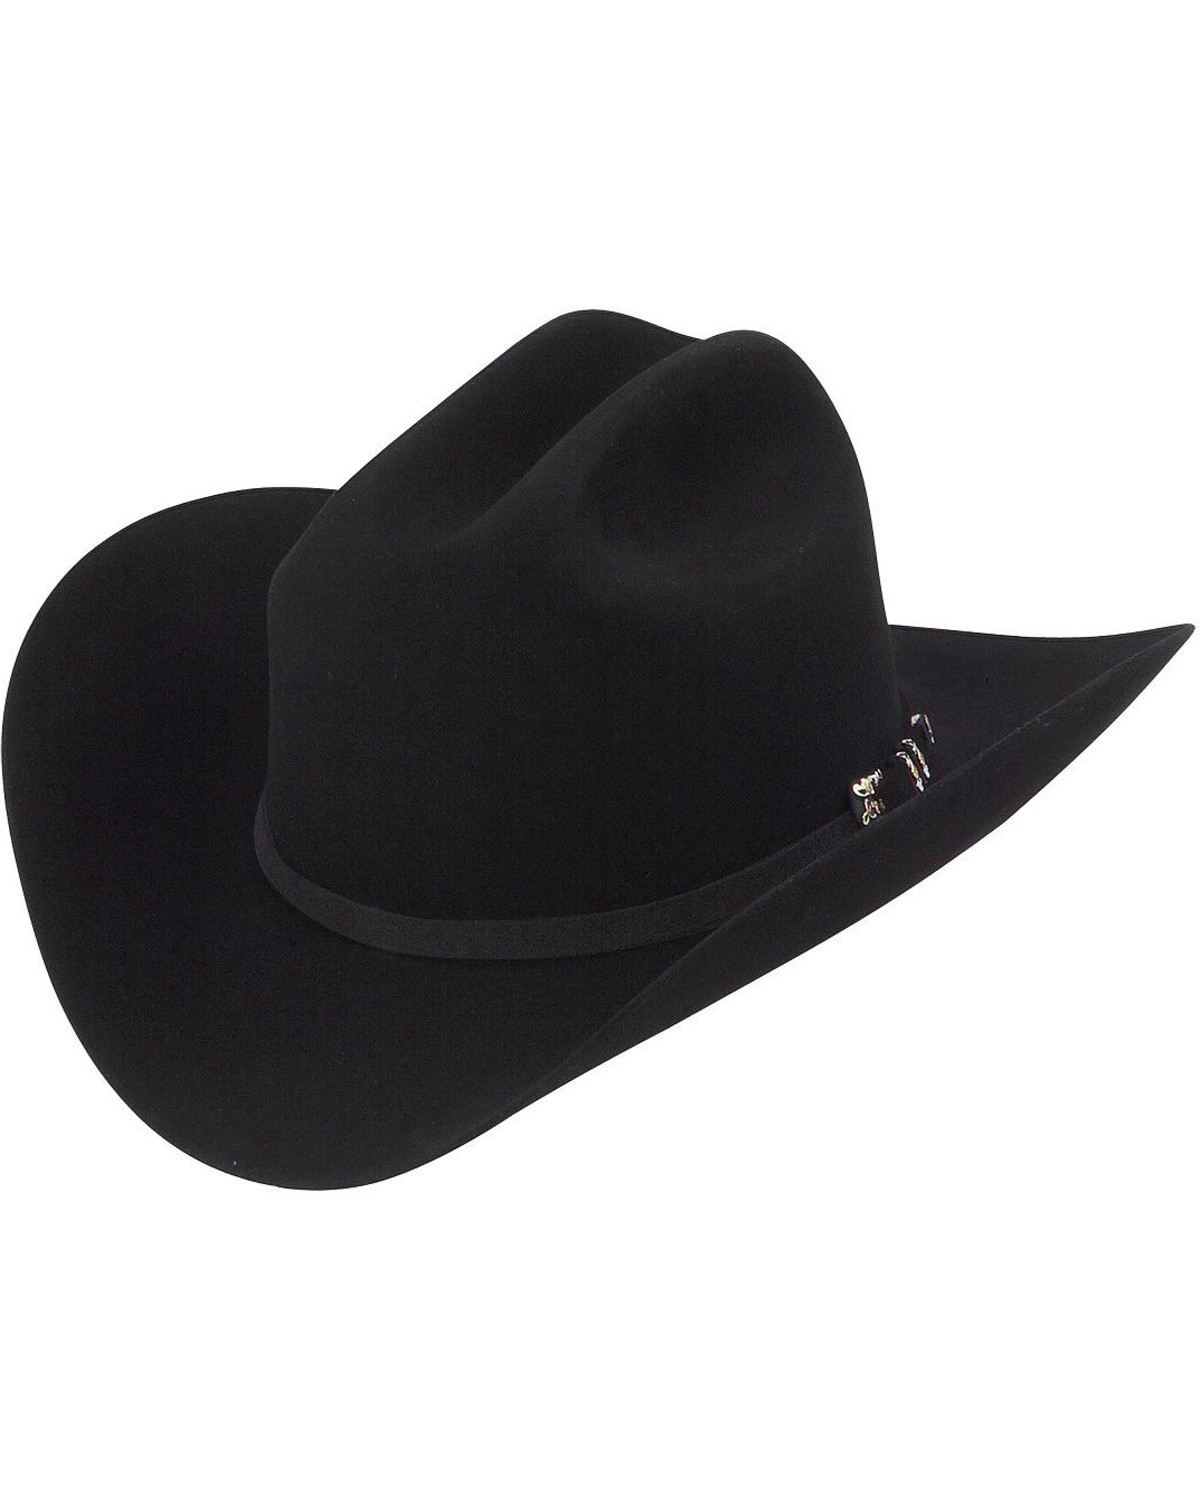 Larry Mahan Jerarca 10X Felt Cowboy Hat